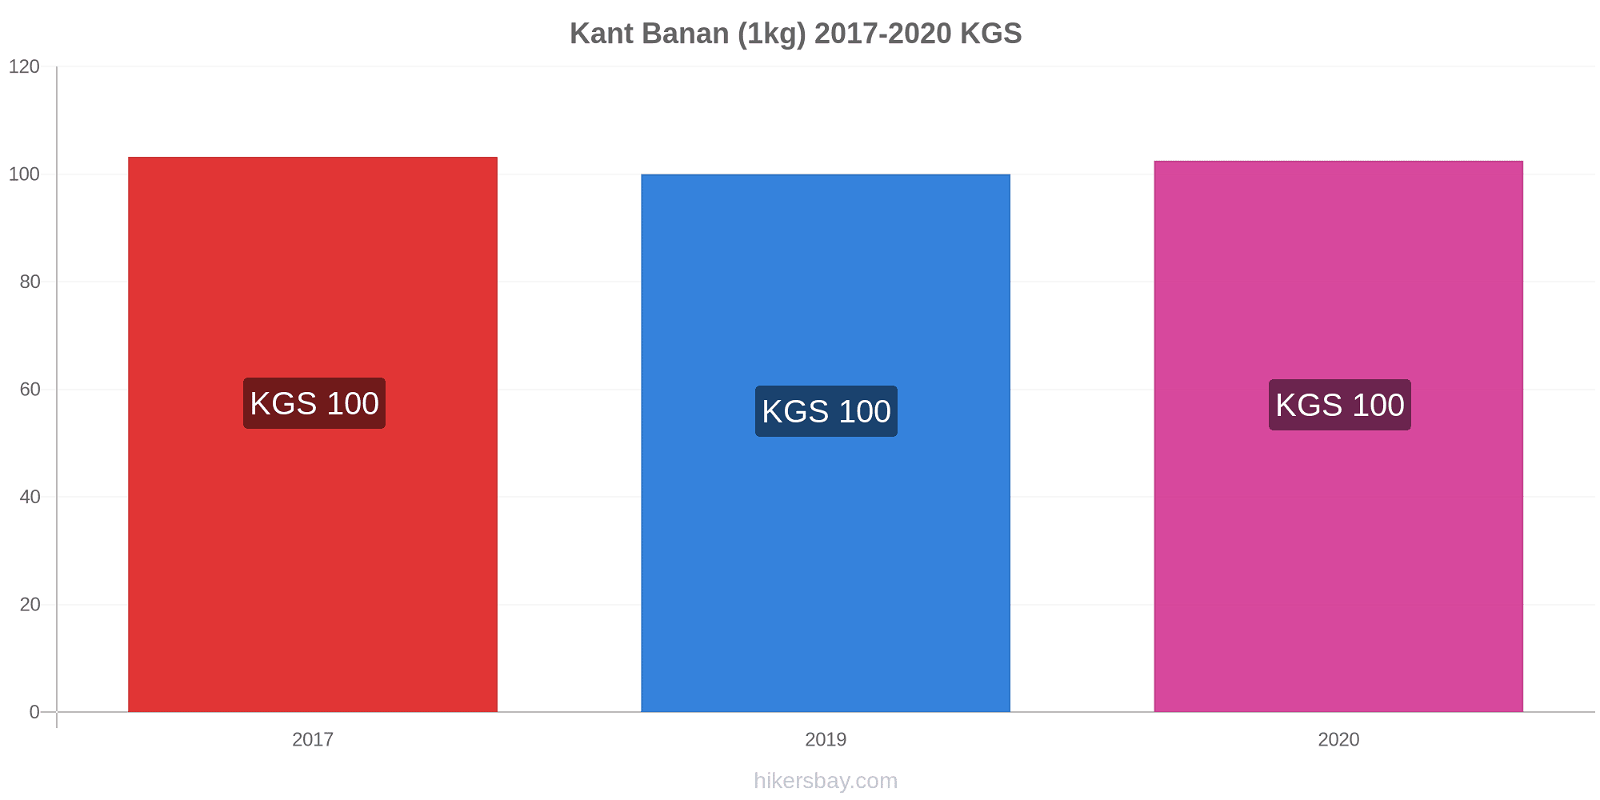 Kant prisændringer Banan (1kg) hikersbay.com